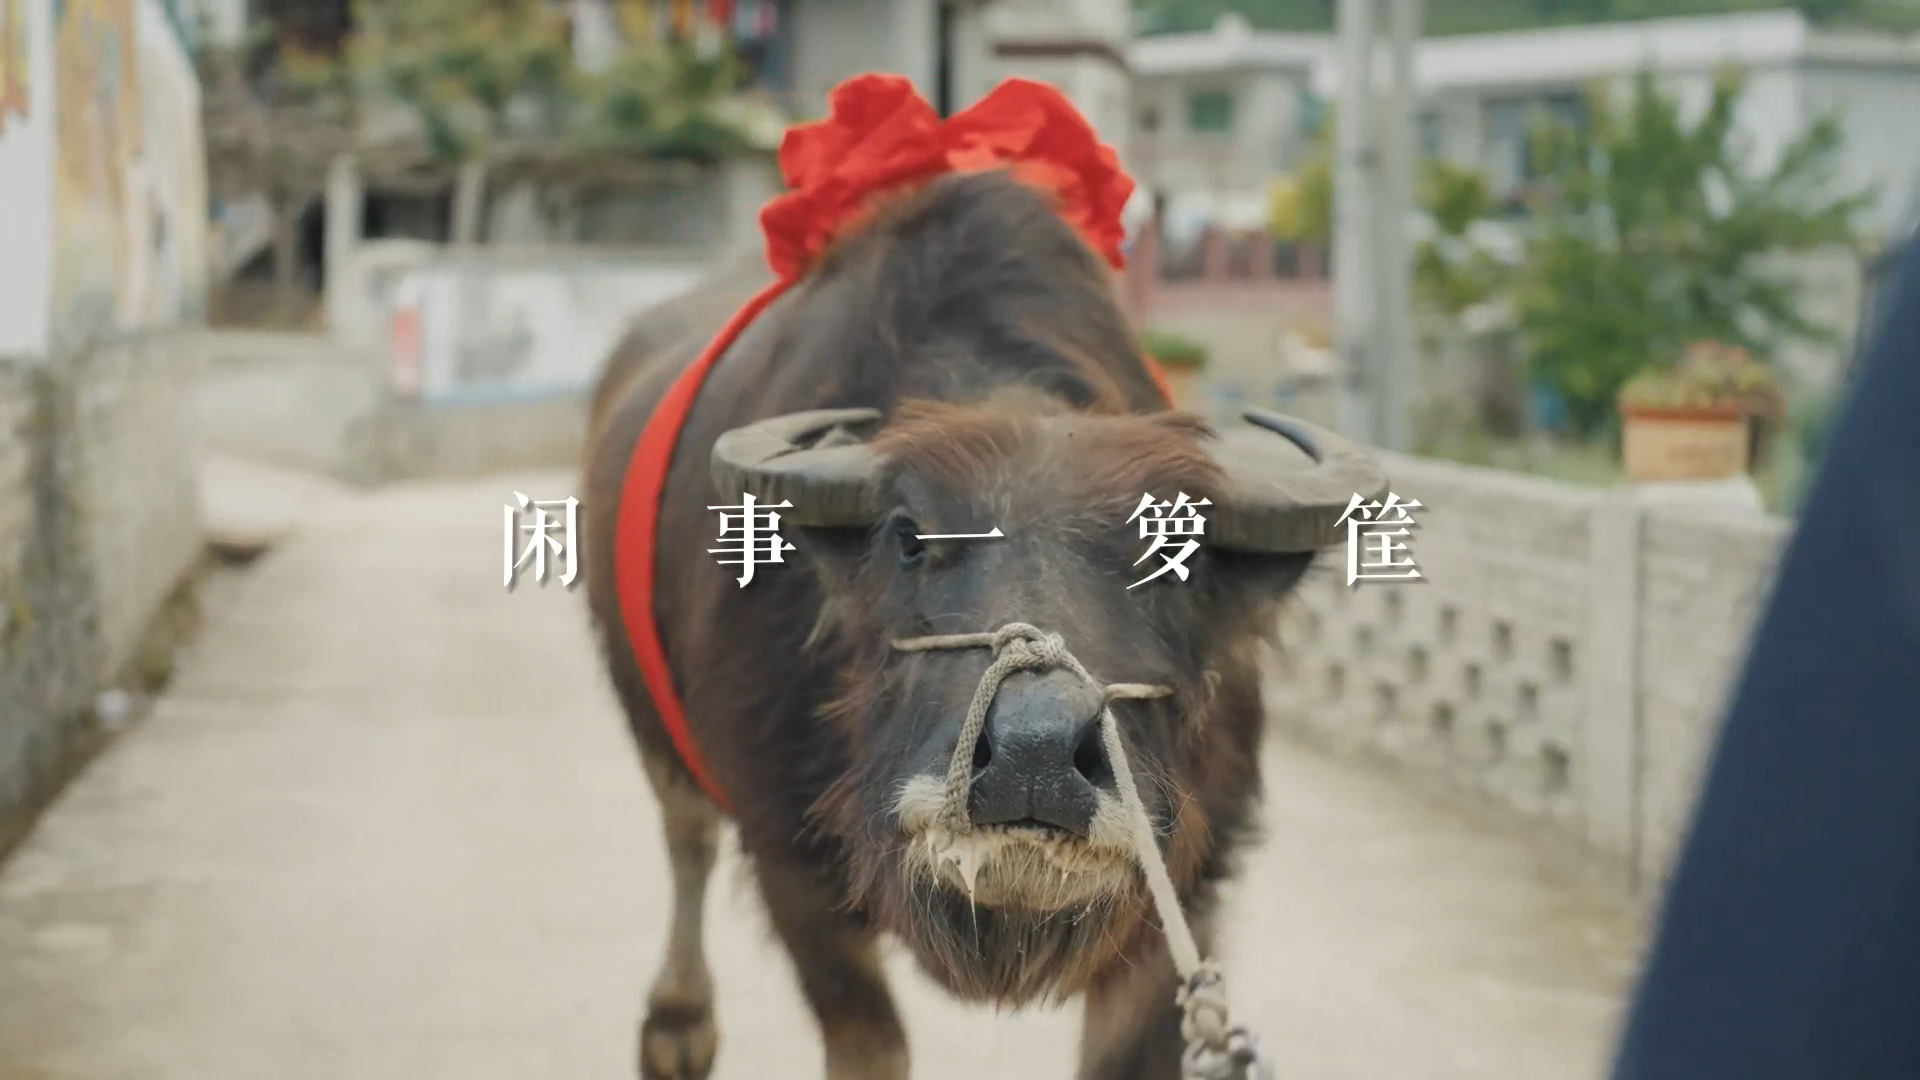 《闲事一箩筐》丨贵州省首届社会主义核心价值观主题微电影(微视频)征集展示活动作品